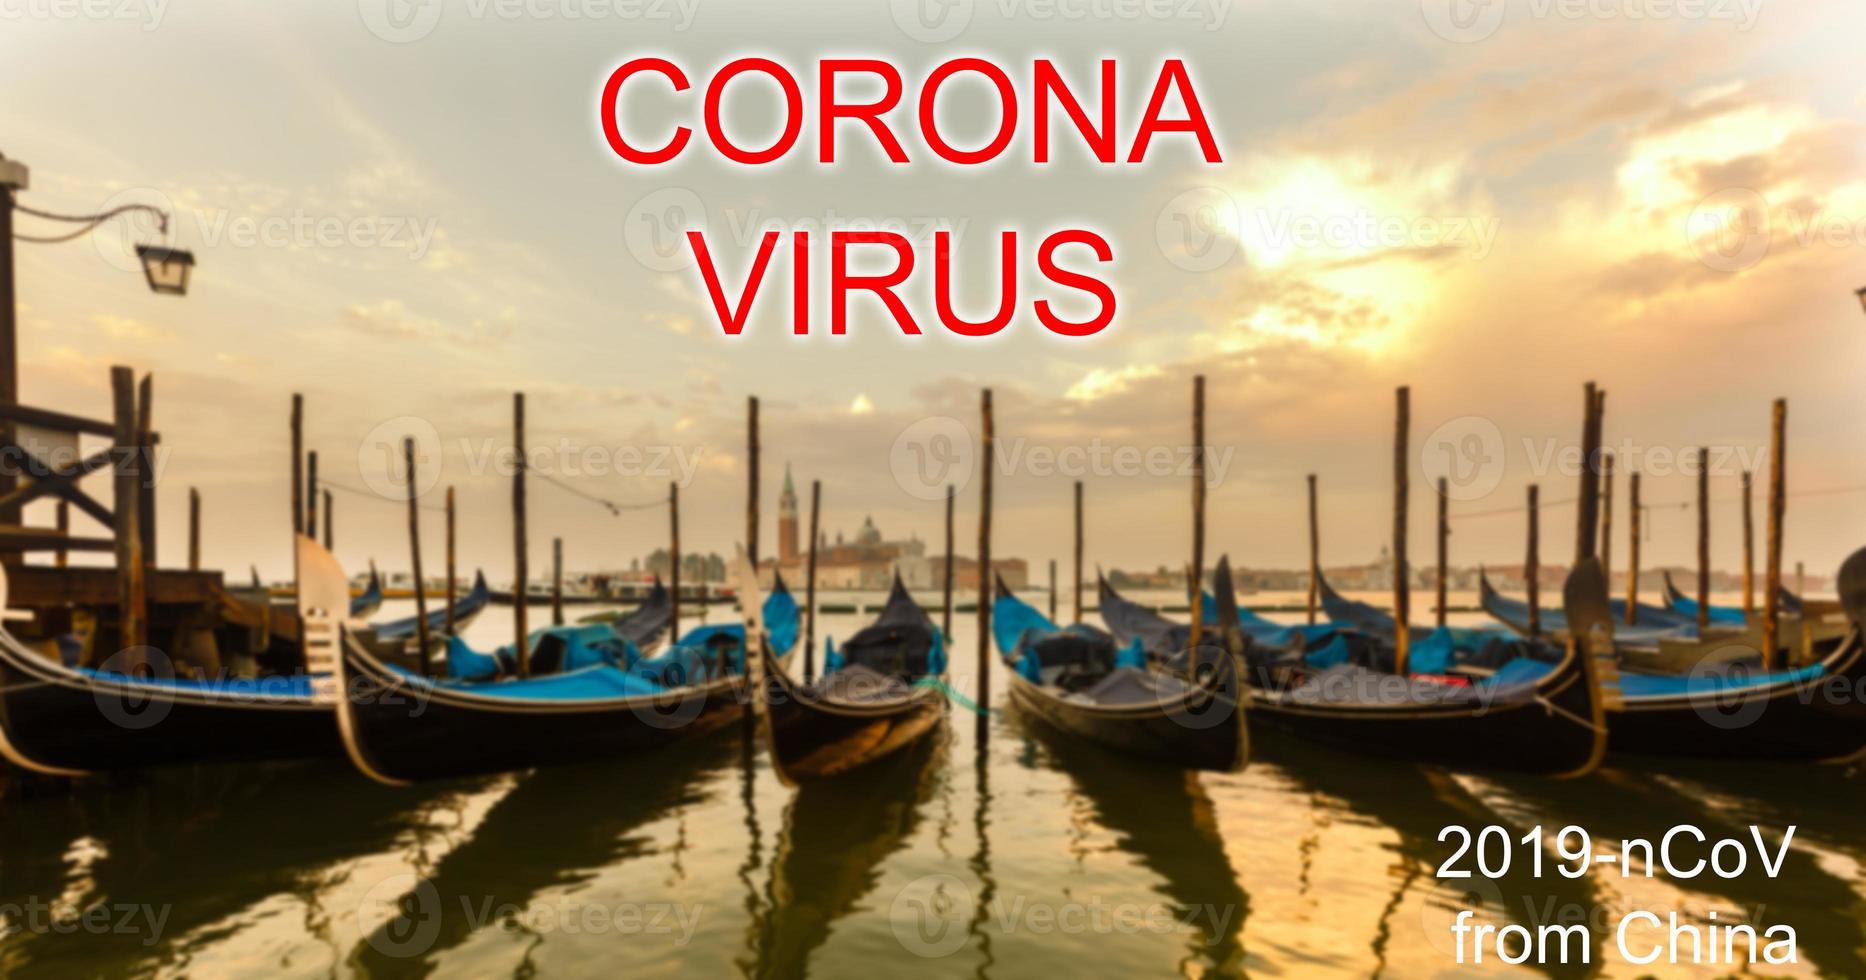 coronavirus 2019-nCoV, covid-19 en Italia. Venecia góndolas en san marco cuadrado, Venecia, Italia. foto